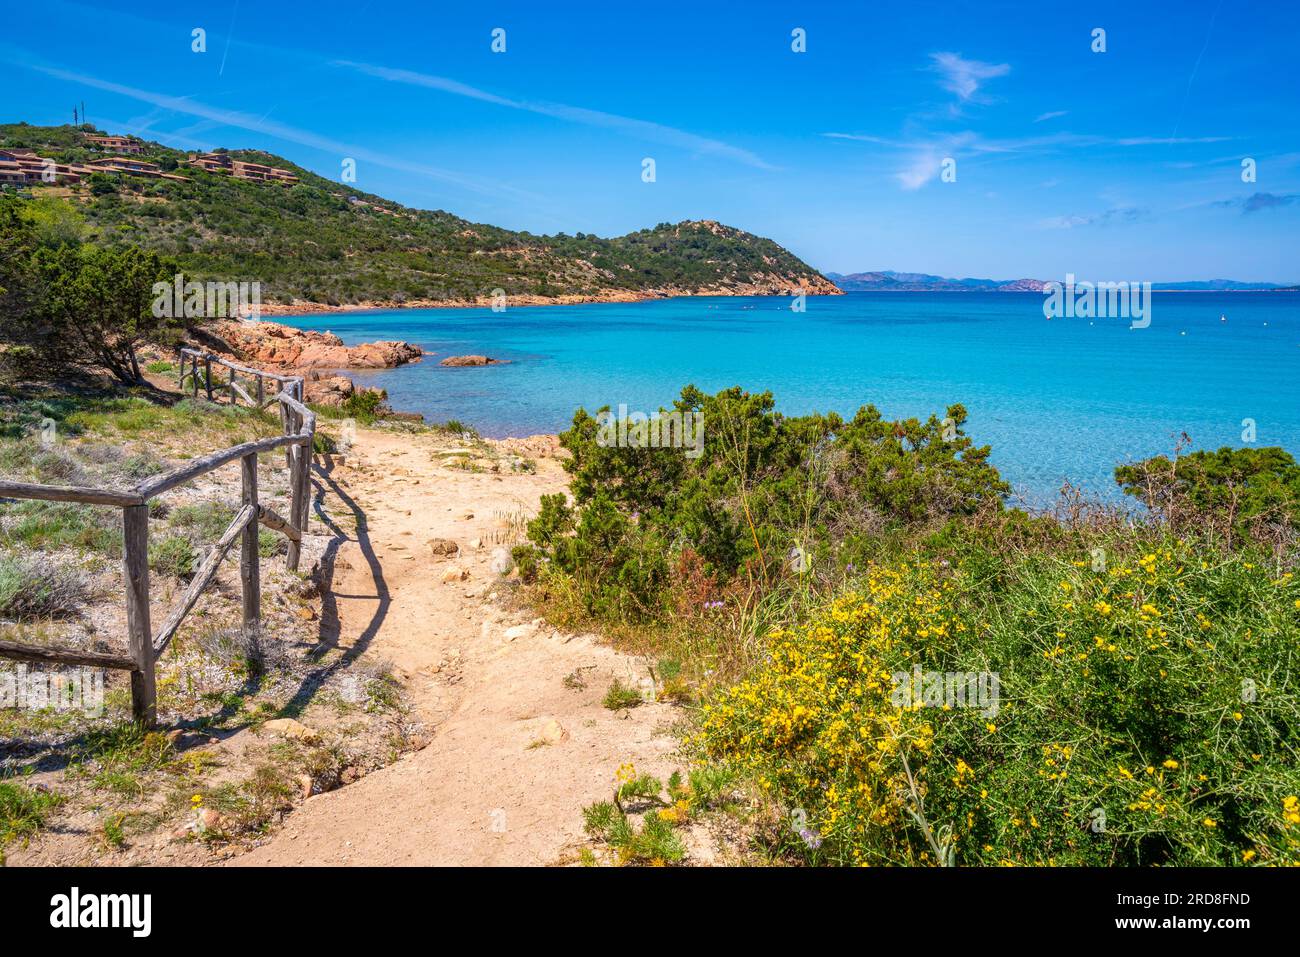 Vue sur la plage de Capo Coda Cavallo depuis la position surélevée, Sardaigne, Italie, Méditerranée, Europe Banque D'Images